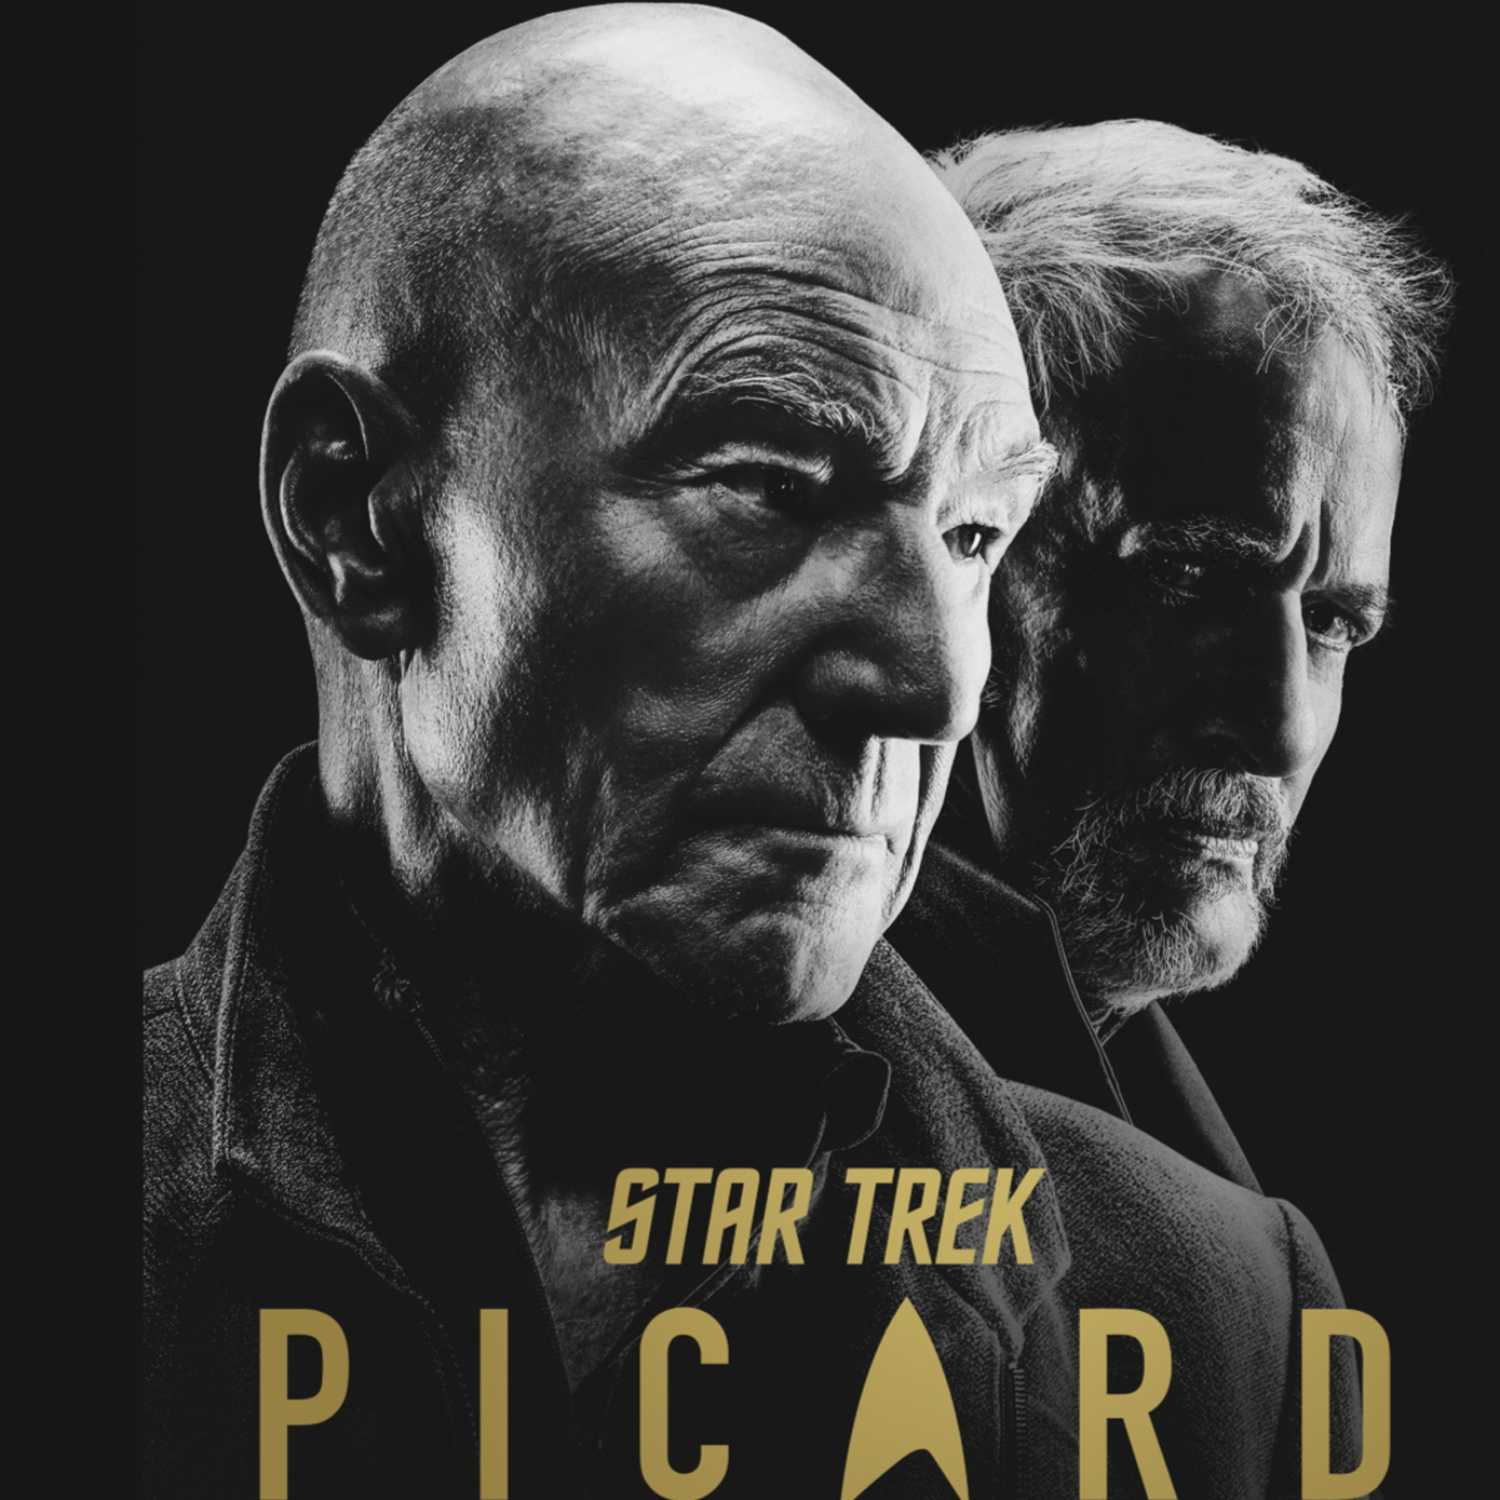 Bonus Episode: Star Trek Picard S2E4